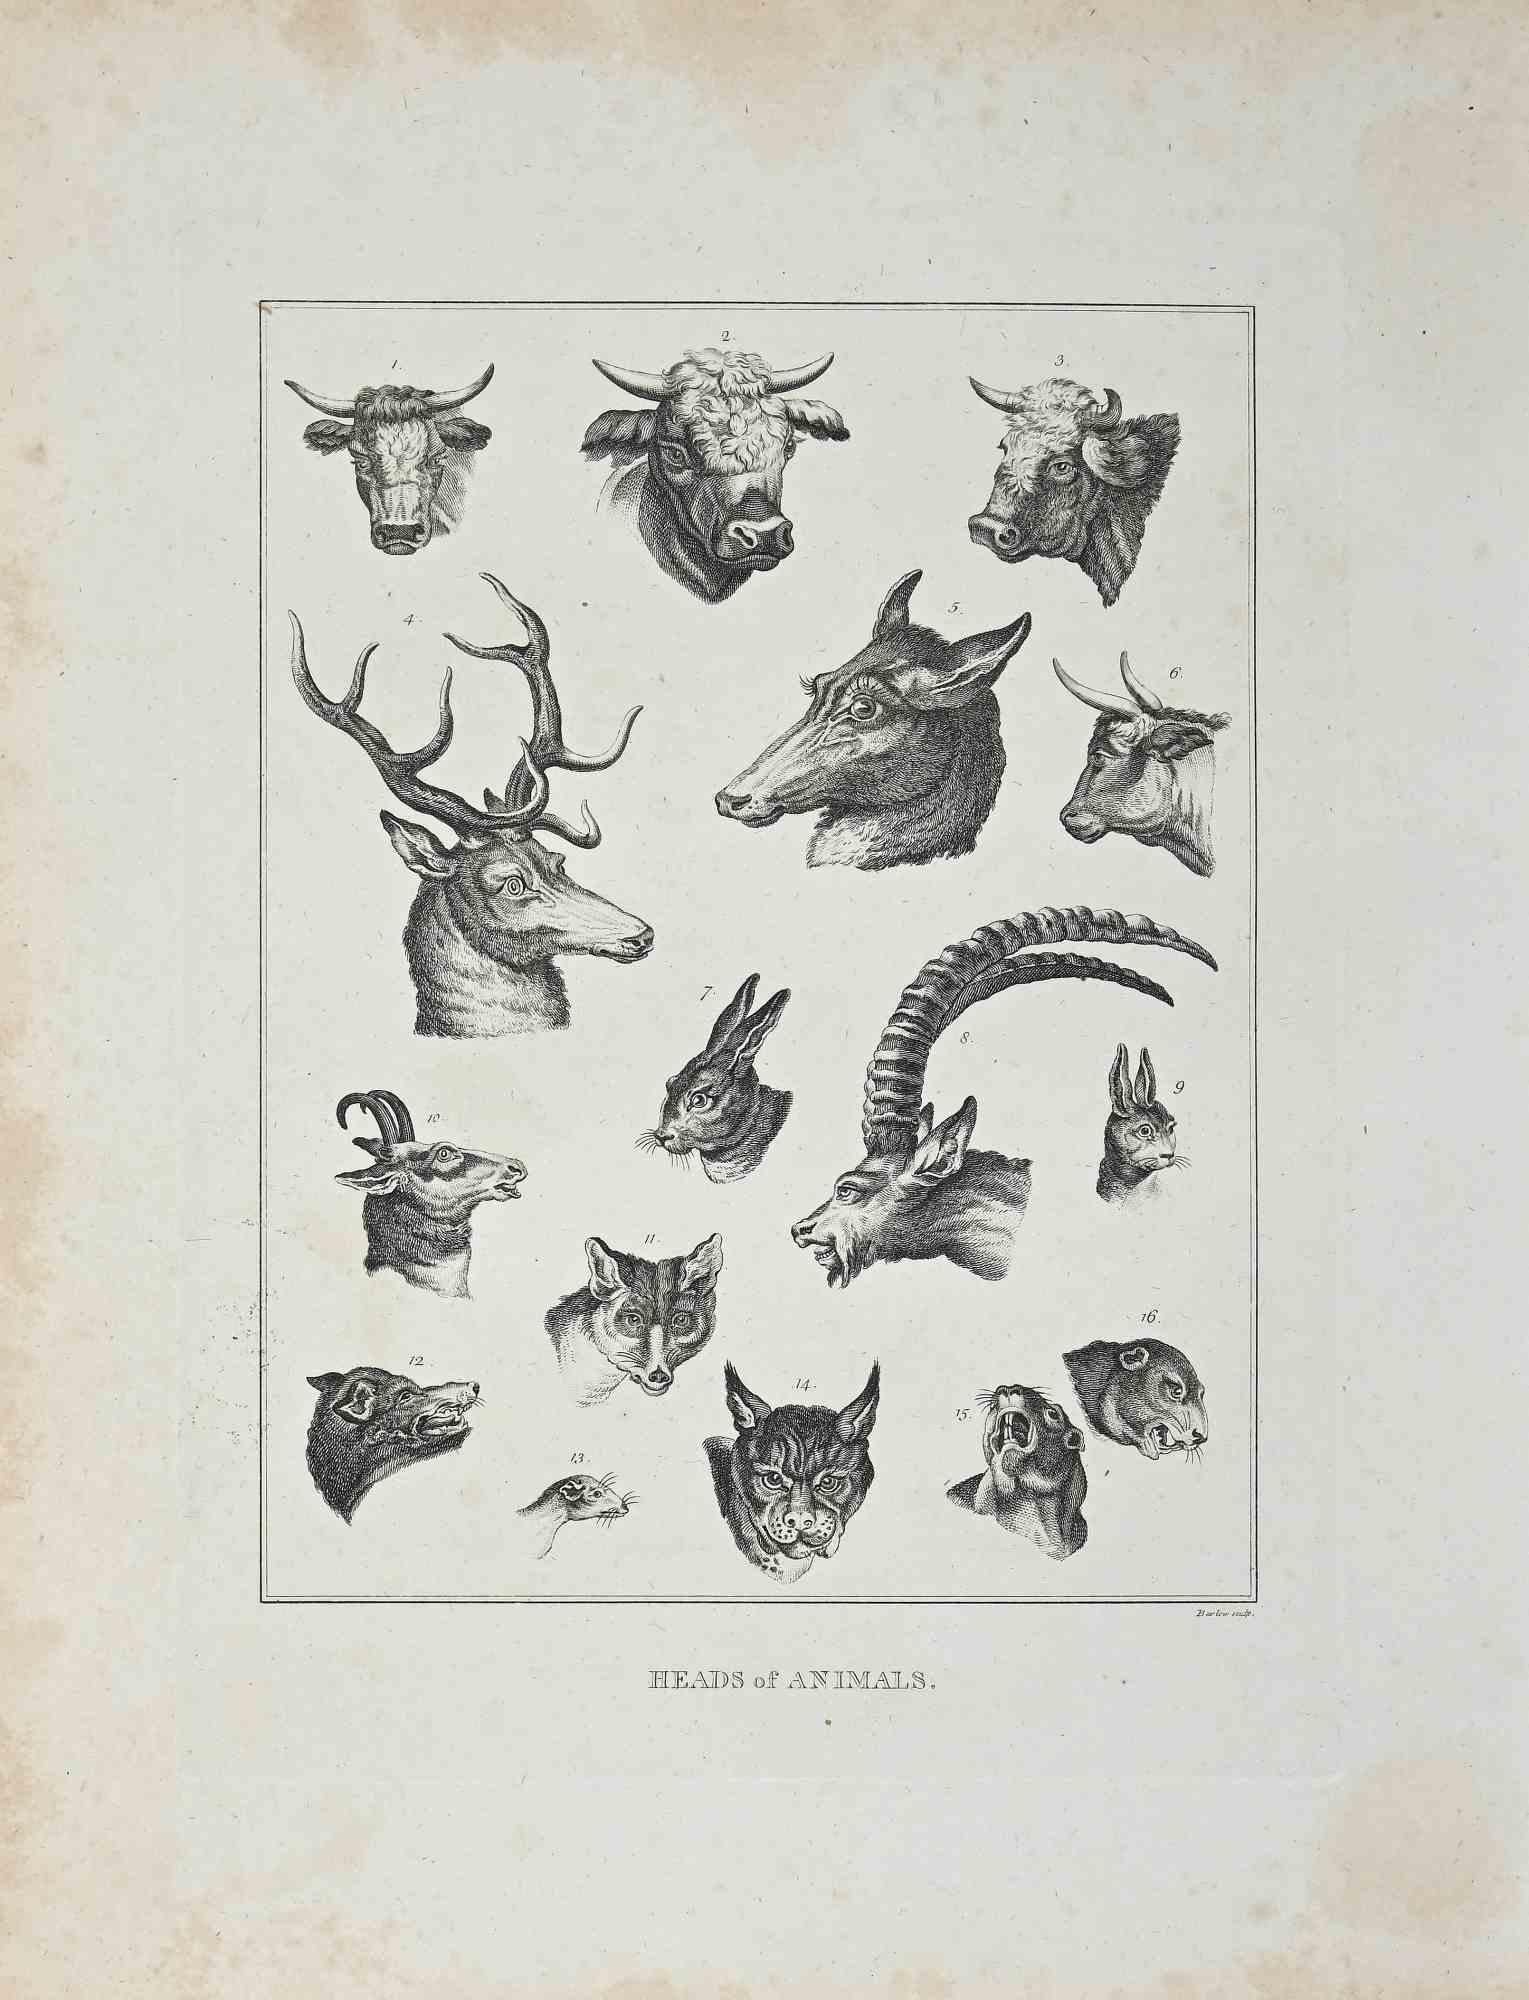 Têtes d'animaux est une œuvre d'art originale réalisée par John Barlow (1759 - 1810).

Gravure originale de J.C. Essais de Lavater sur la physiognomonie, destinés à promouvoir la connaissance et l'amour de l'humanité", Londres, Bensley, 1810.